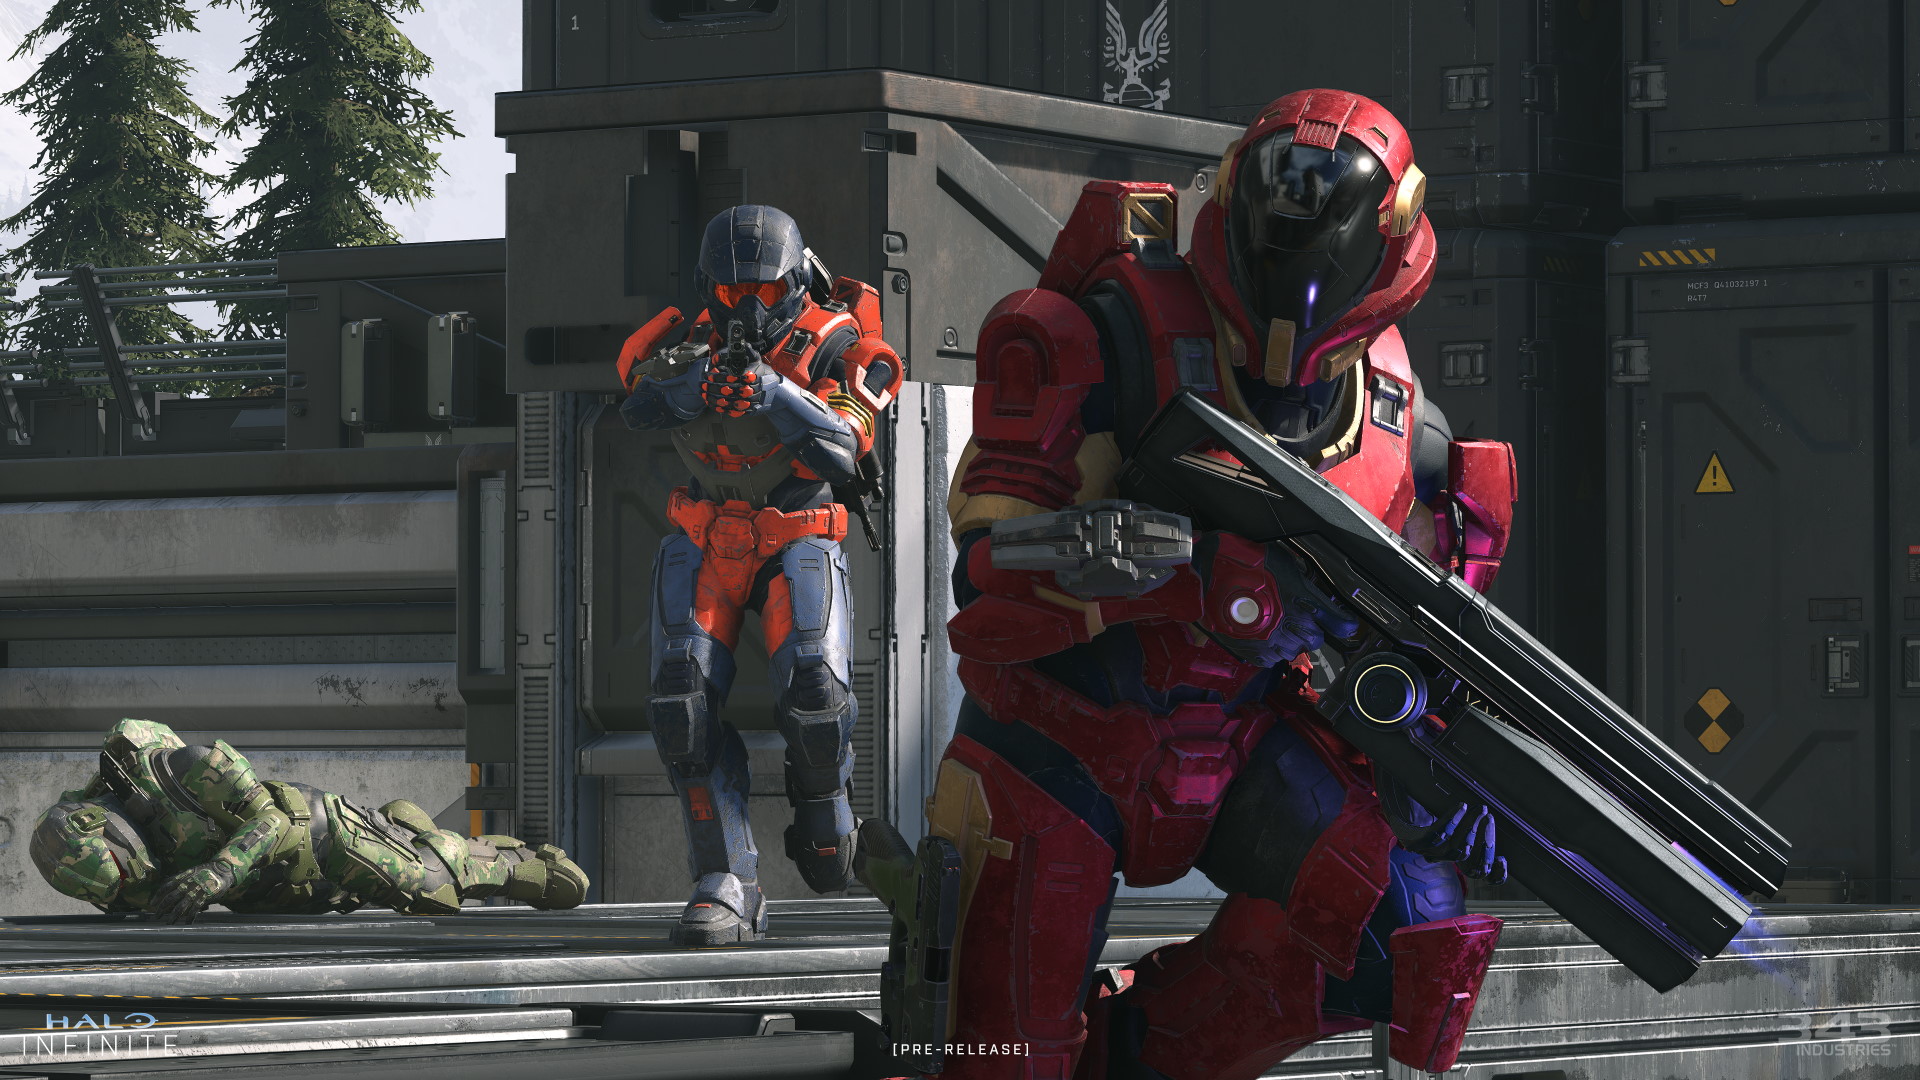 Halo, série baseada nos games de Xbox, ganha primeiro teaser